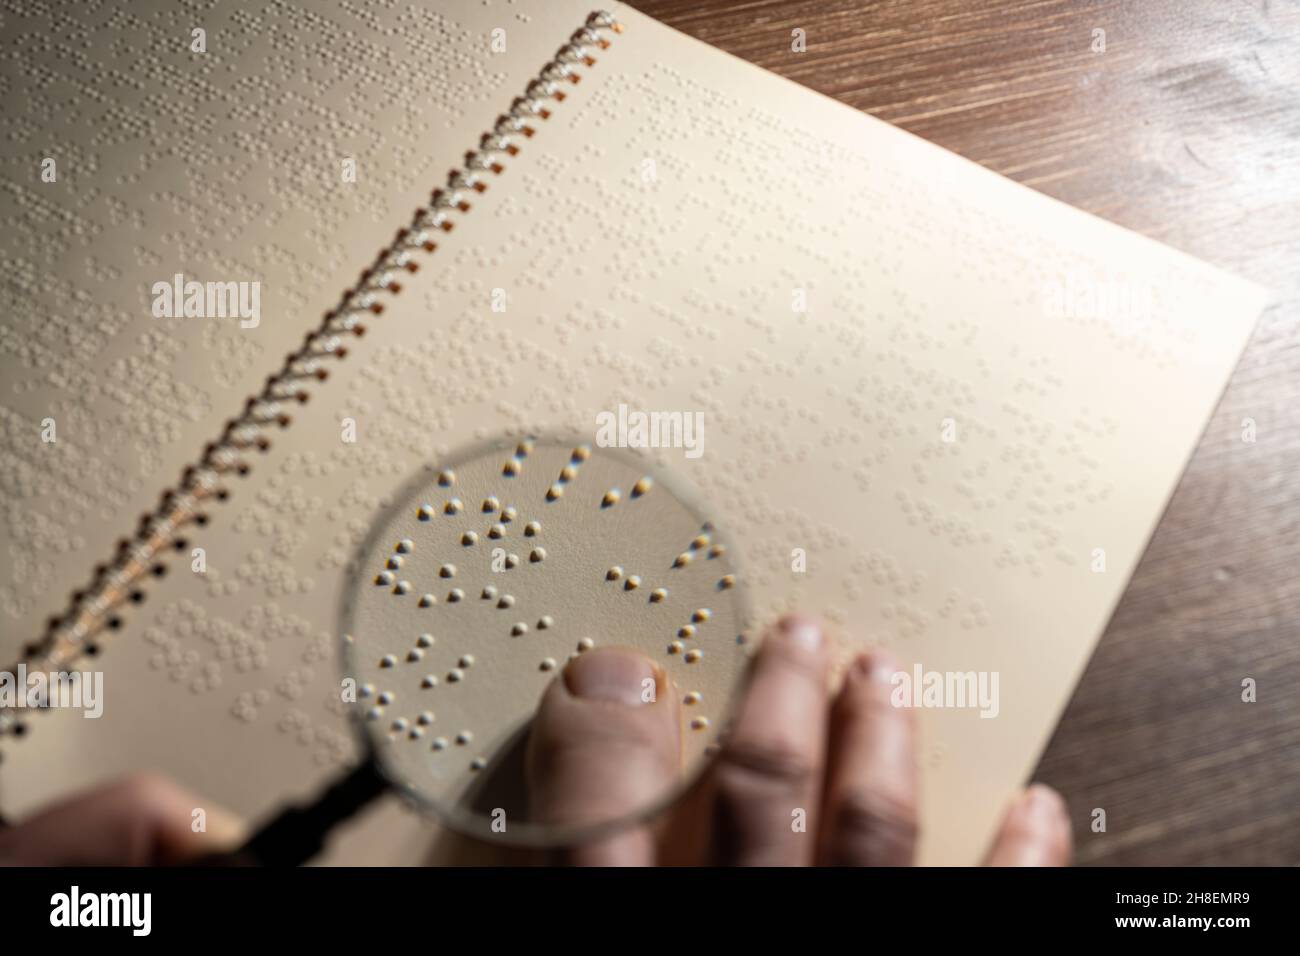 Le foyer d'une loupe sur une page écrite en braille, le système de lecture tactile en relief pour les aveugles Banque D'Images